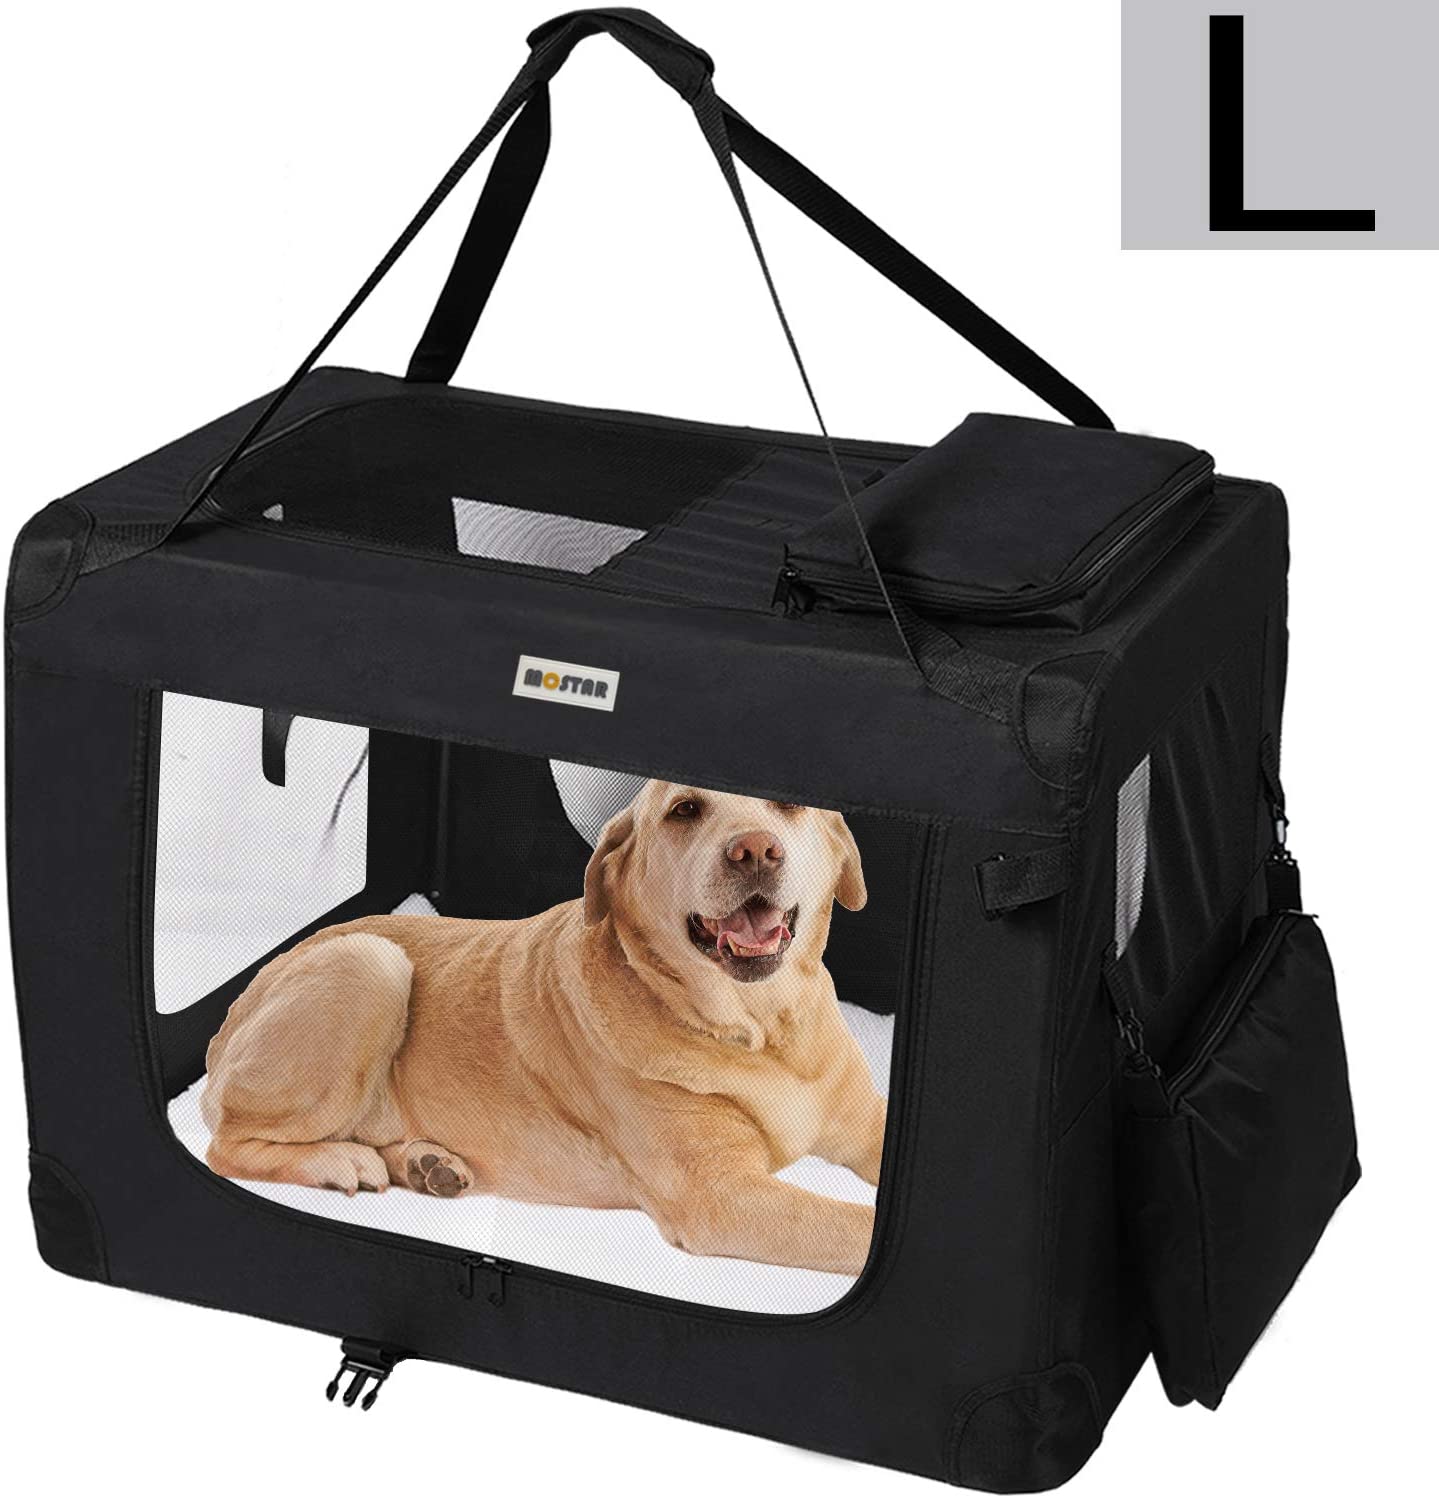  MC Star Transportin para Perros Gatos Mascotas Plegable Portátil Impermeable Tela Oxford Portador Bolsa de Transporte para Coche Viaje, L 70 x 52cm Negro 